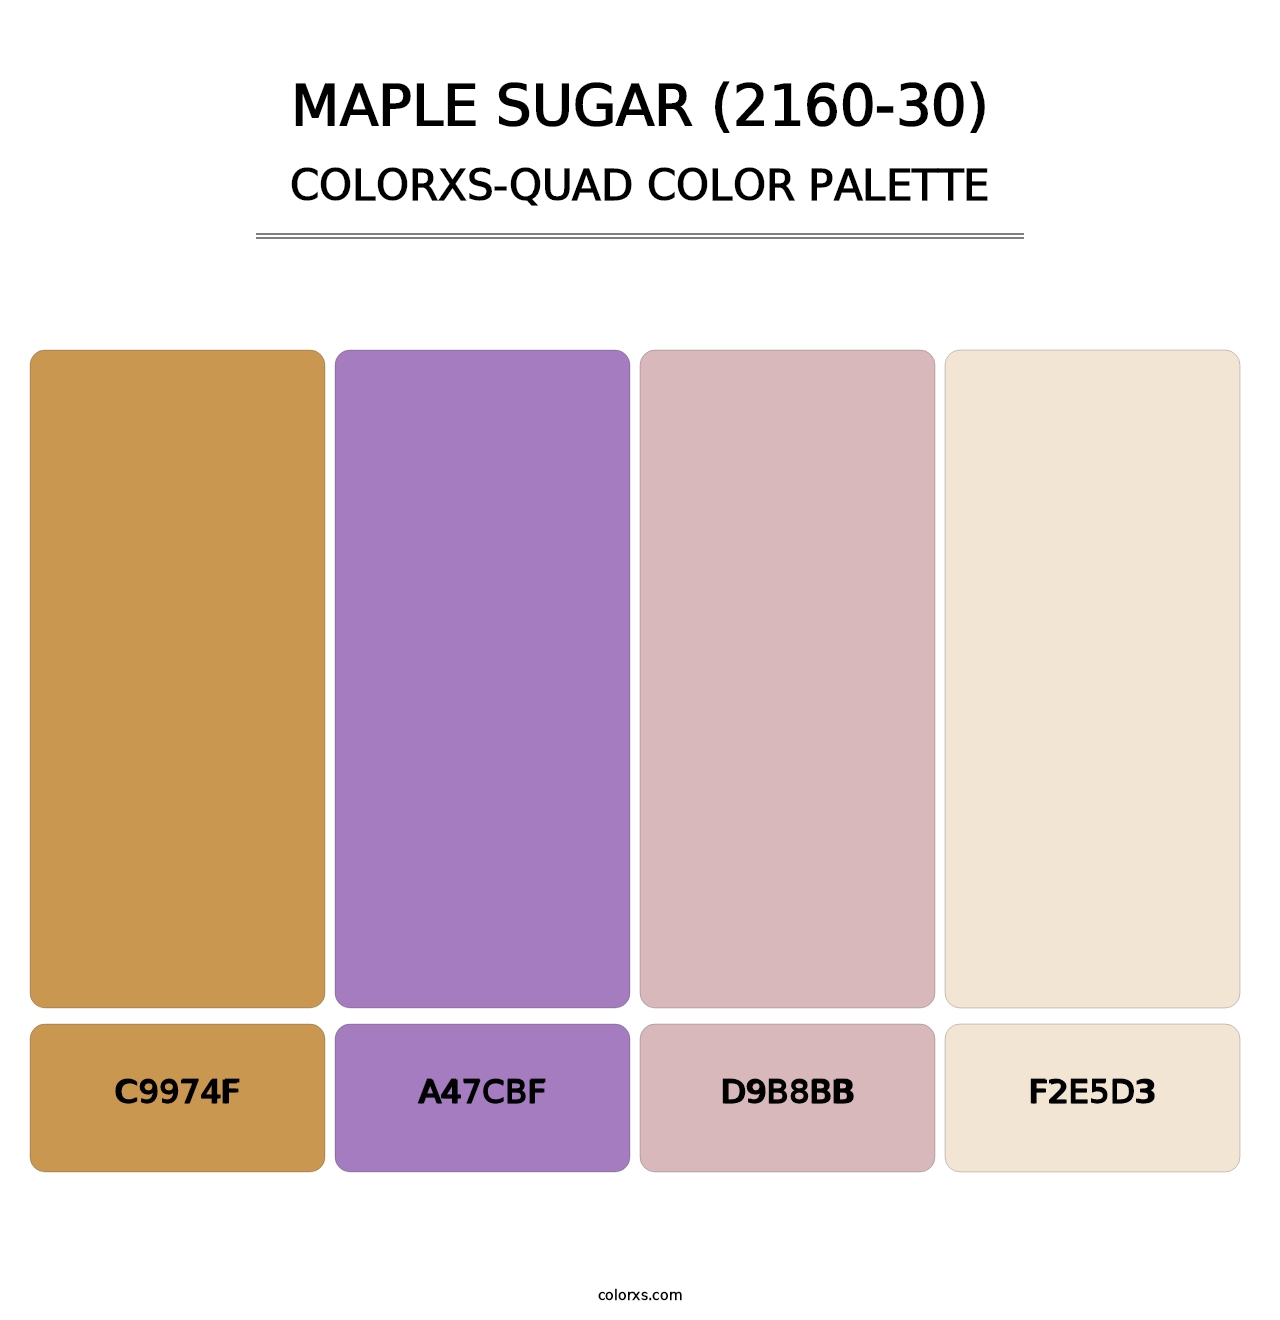 Maple Sugar (2160-30) - Colorxs Quad Palette